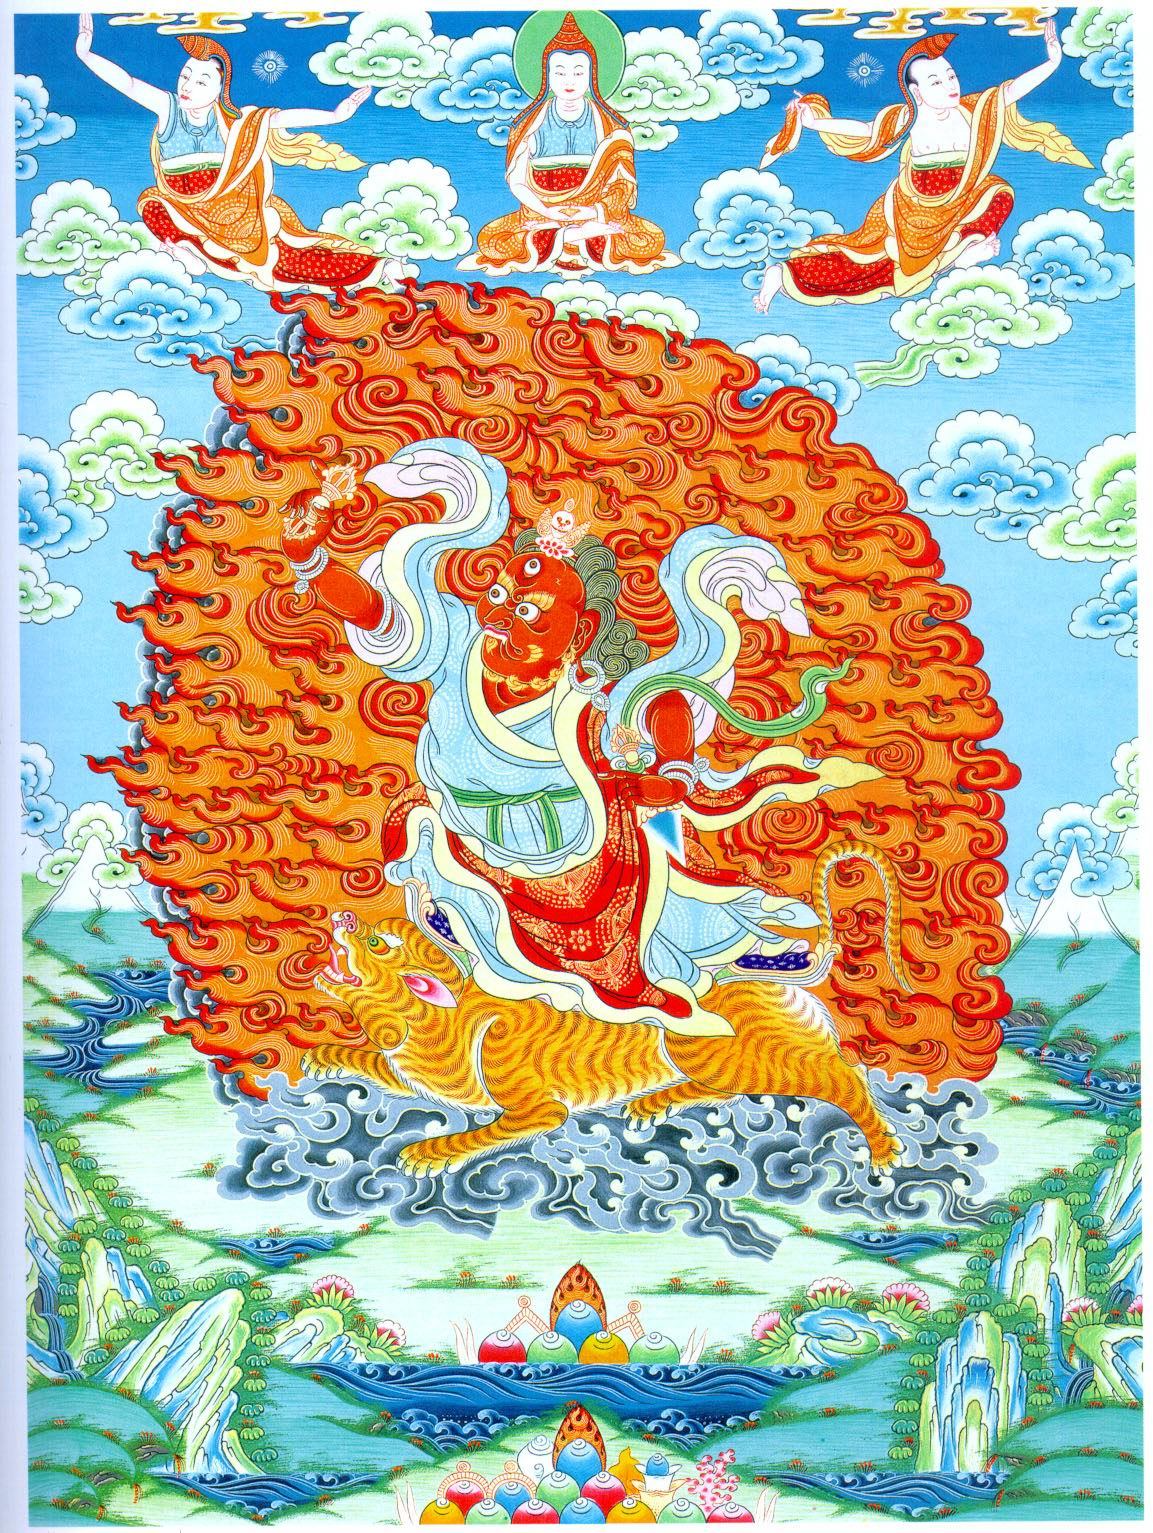 Гуру хай. Рисунок связанный с буддизмом. Рисунок облака буддизм. Буддийский календарь рисунок. Изображение со множеством рыб в буддизме.